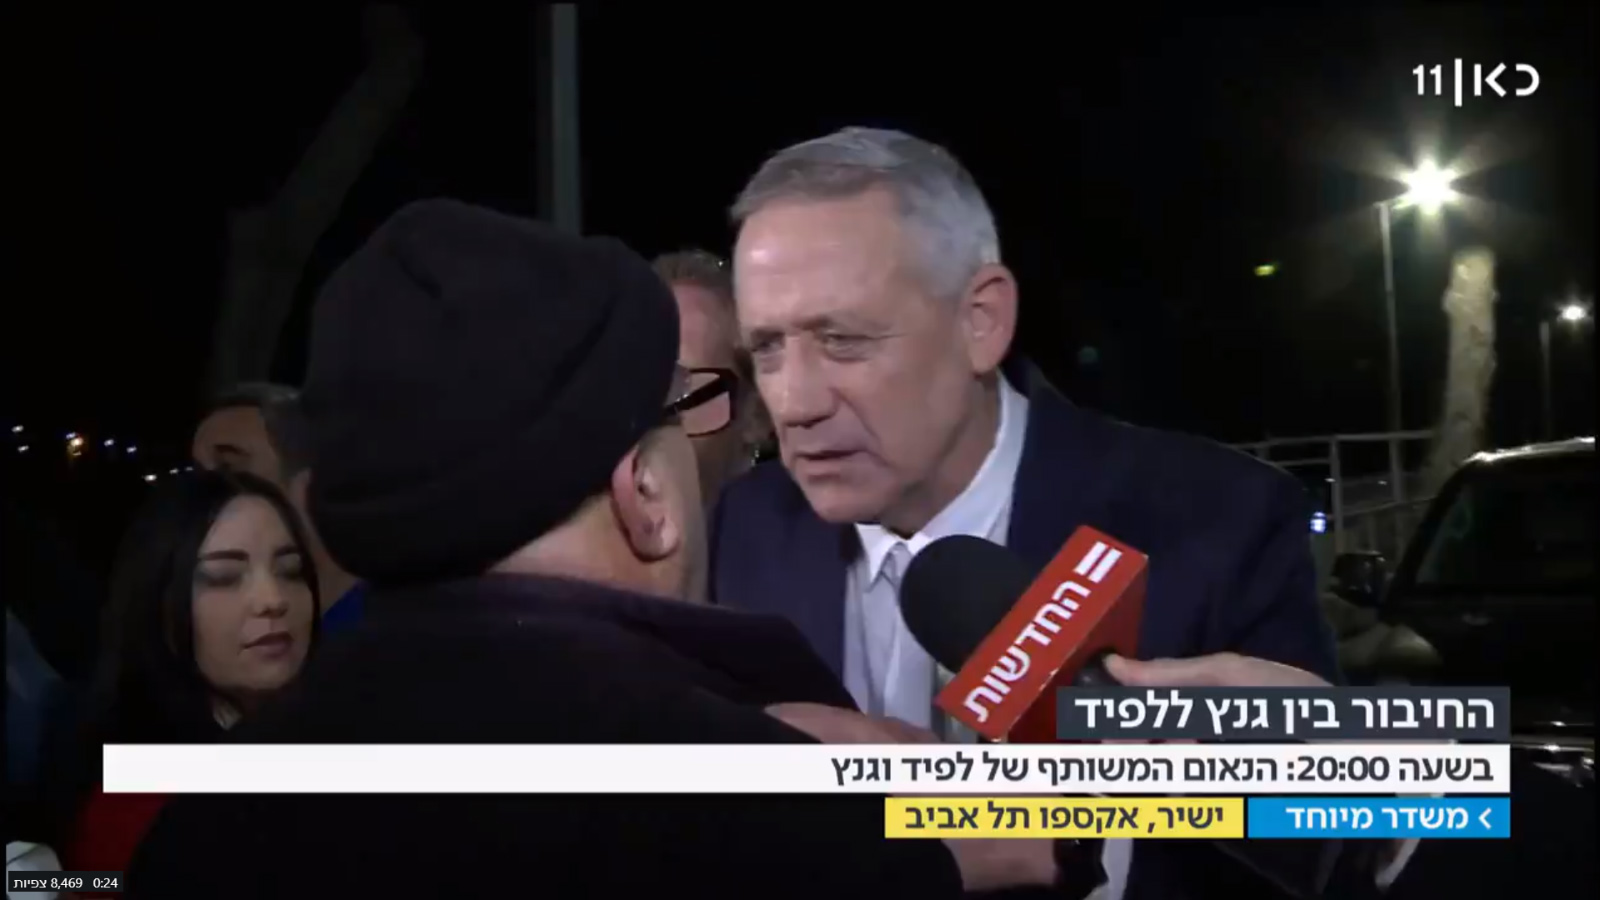 אלי יוסף מתפרץ לכנס של חבר הכנסת בני גנץ (צילום מסך מתוך חדשות כאן)